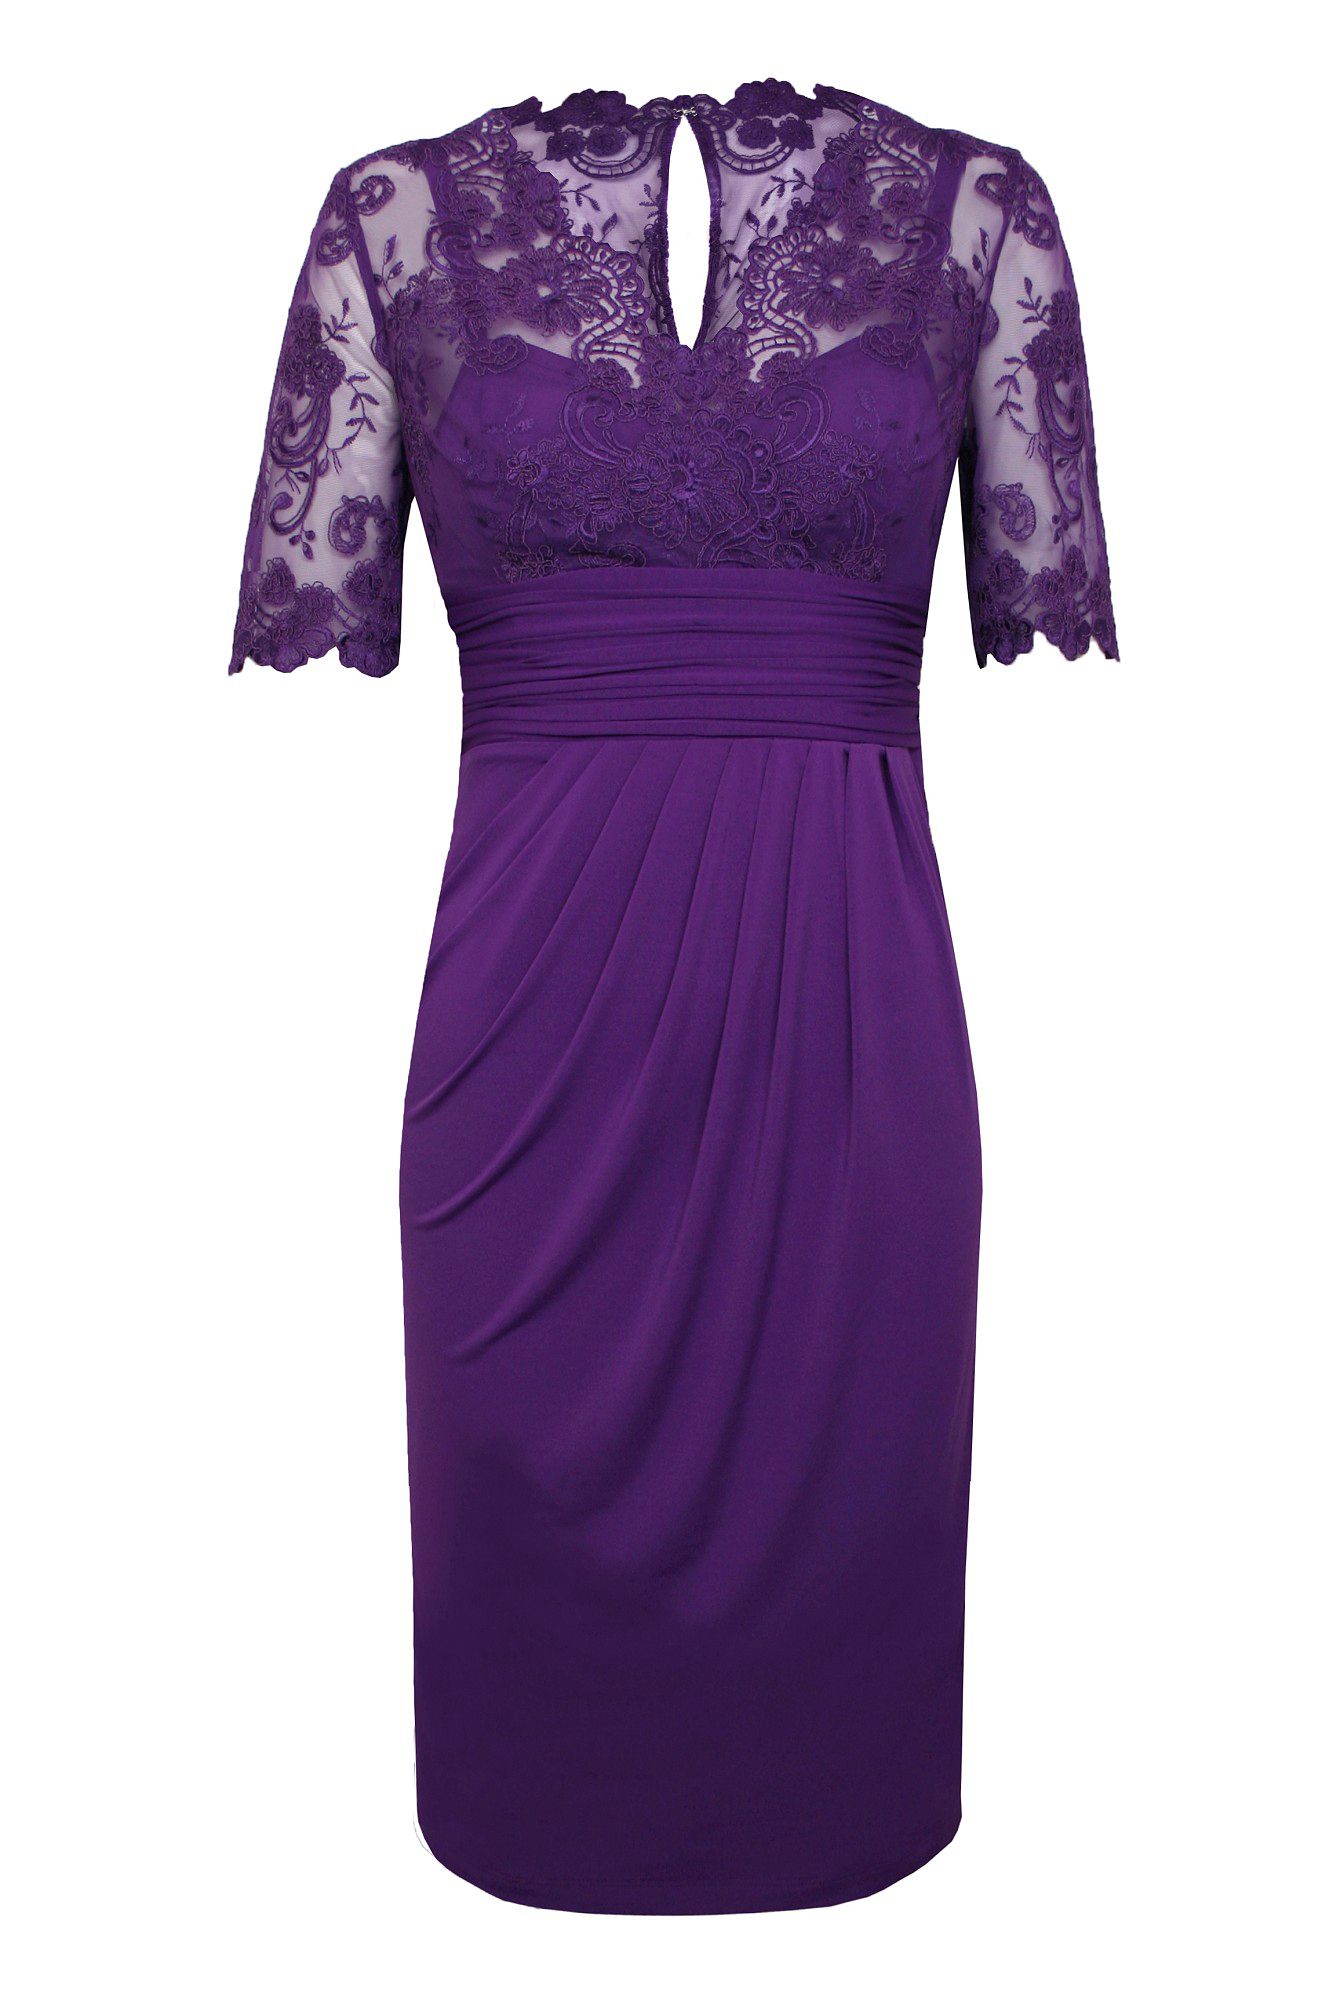 Alexon Lace Top Dress in Purple (Dark Purple) | Lyst